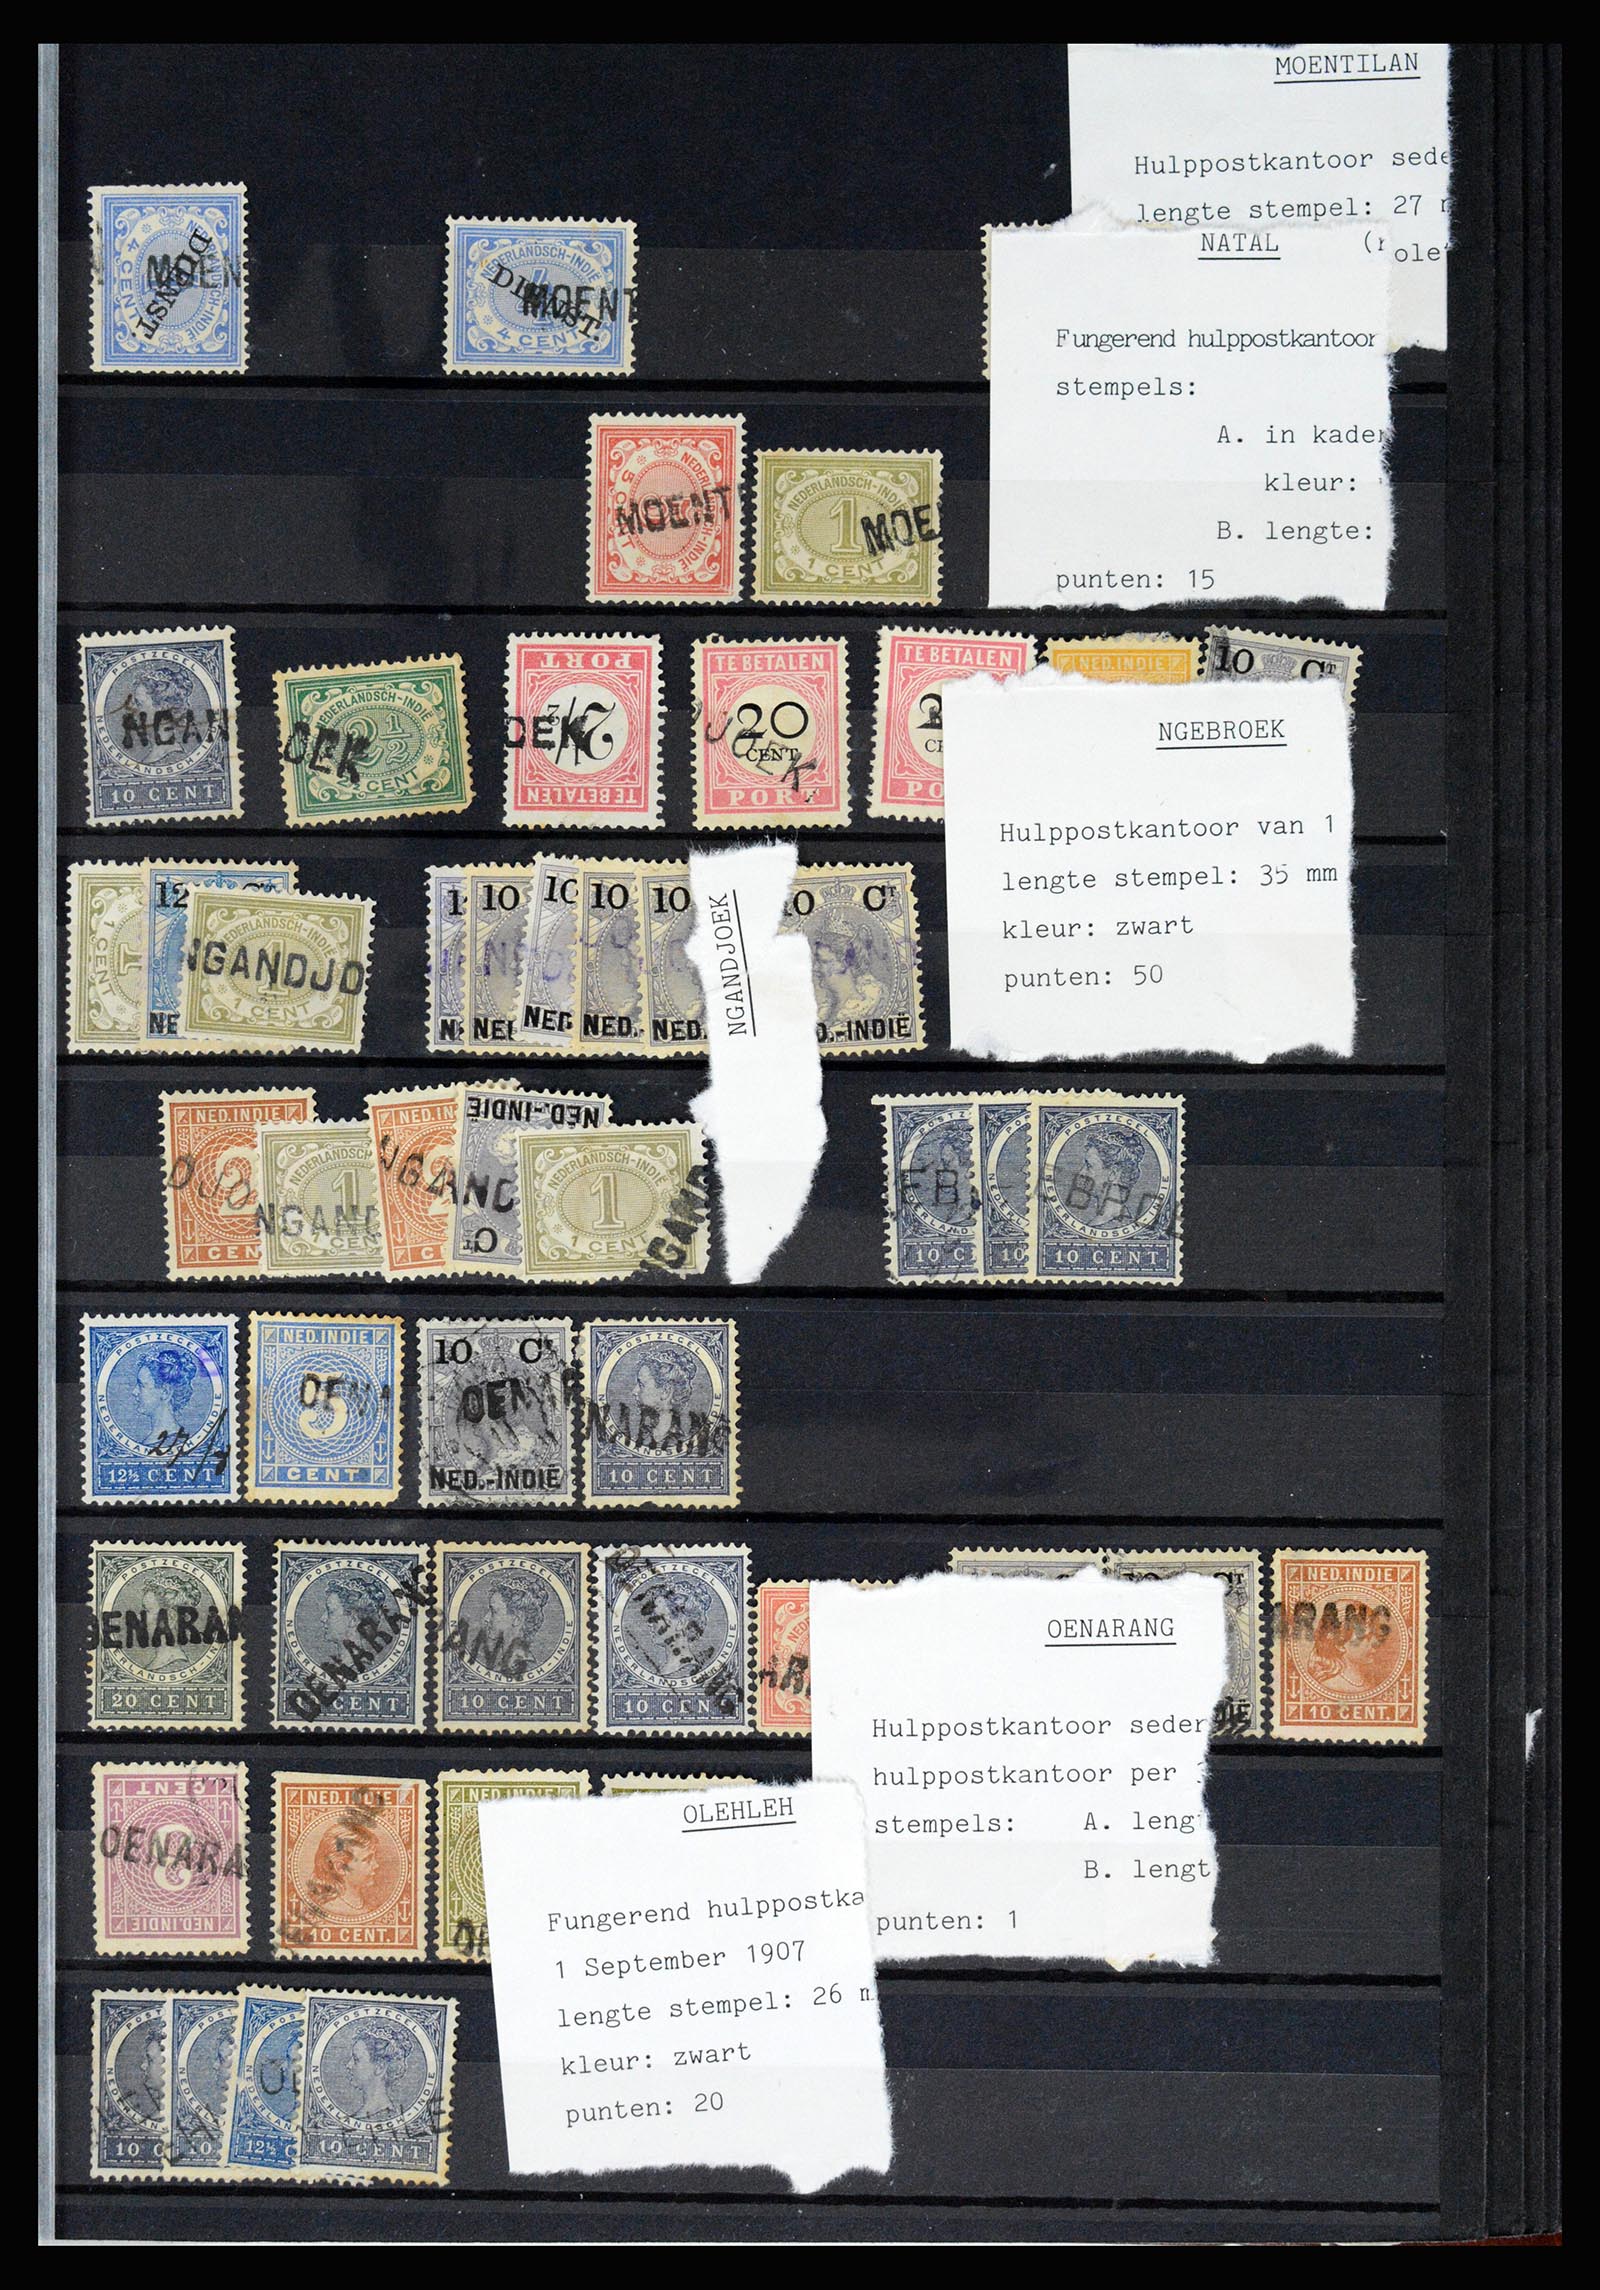 36512 047 - Stamp collection 36512 Nederlands Indië stempels 1872-1930.